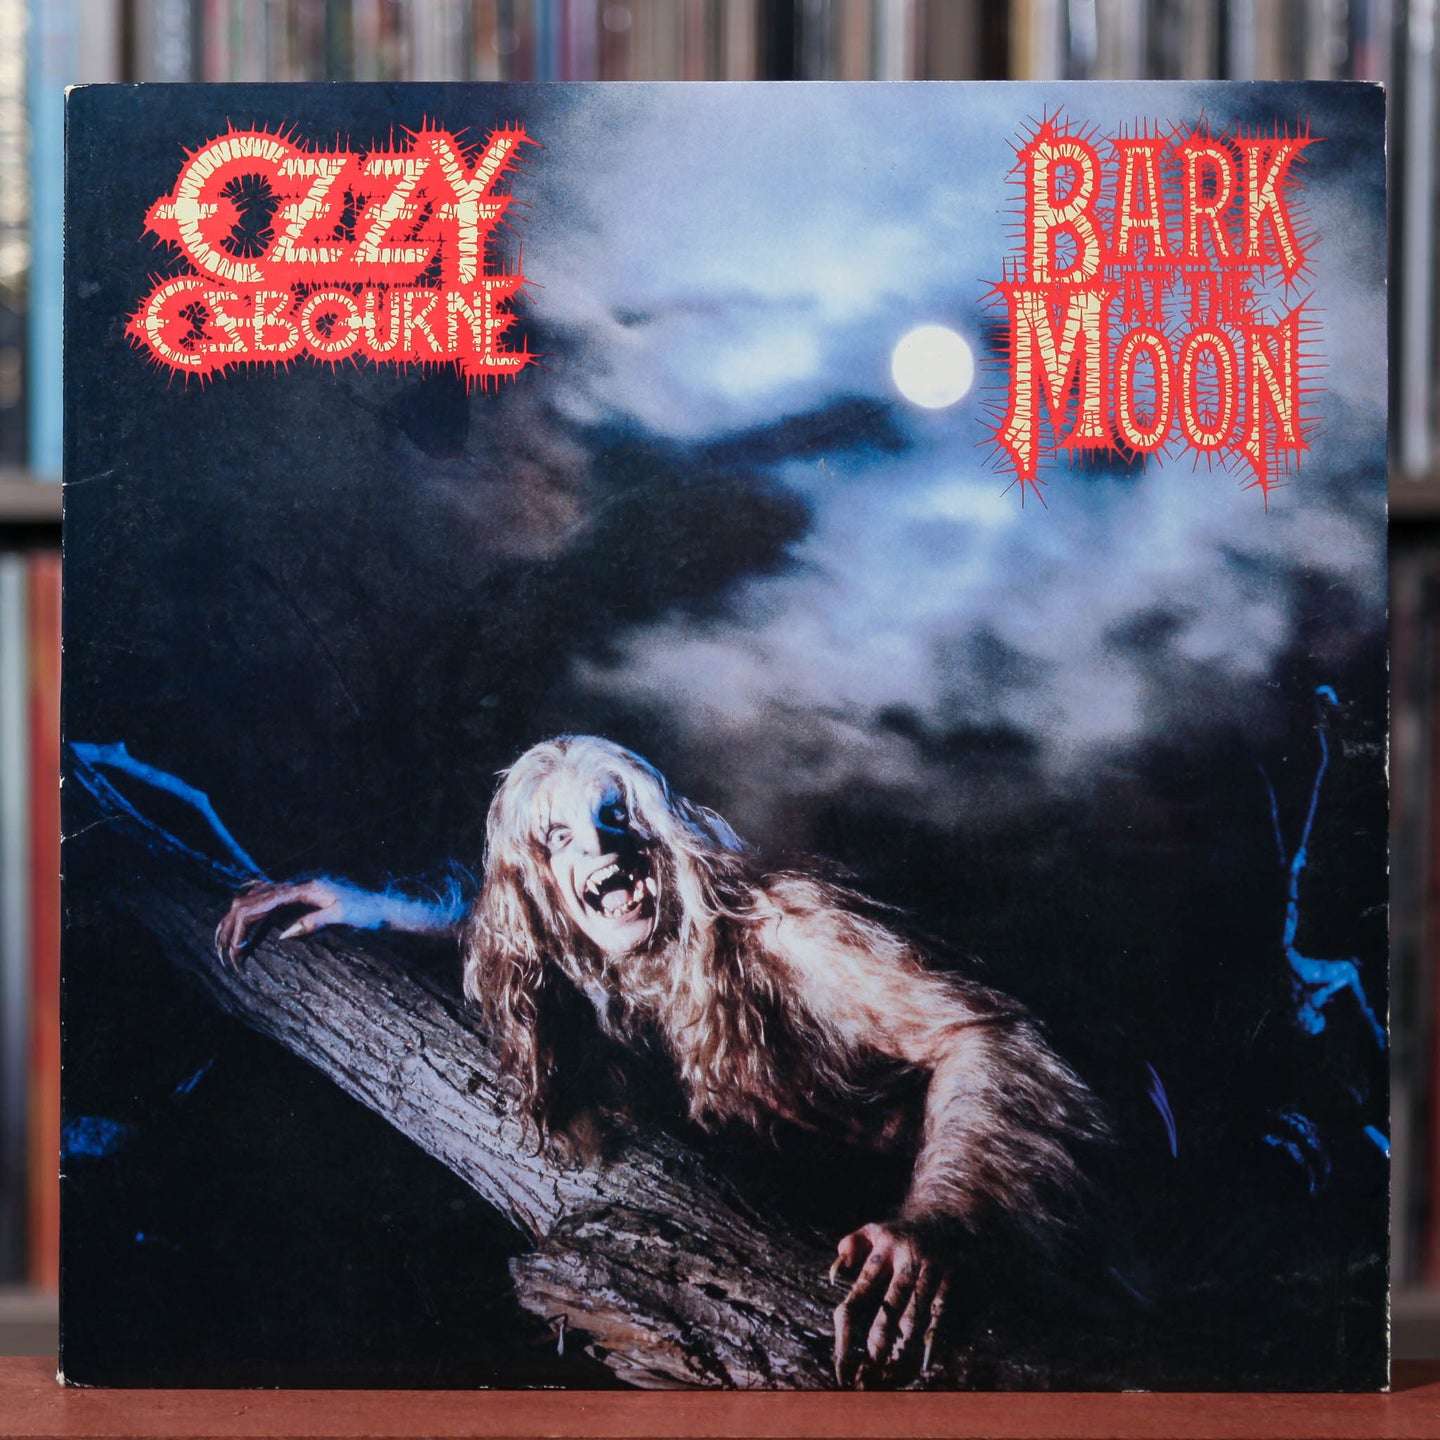 Ozzy Osbourne - Bark At The Moon - 1983 CBS, VG+/VG+